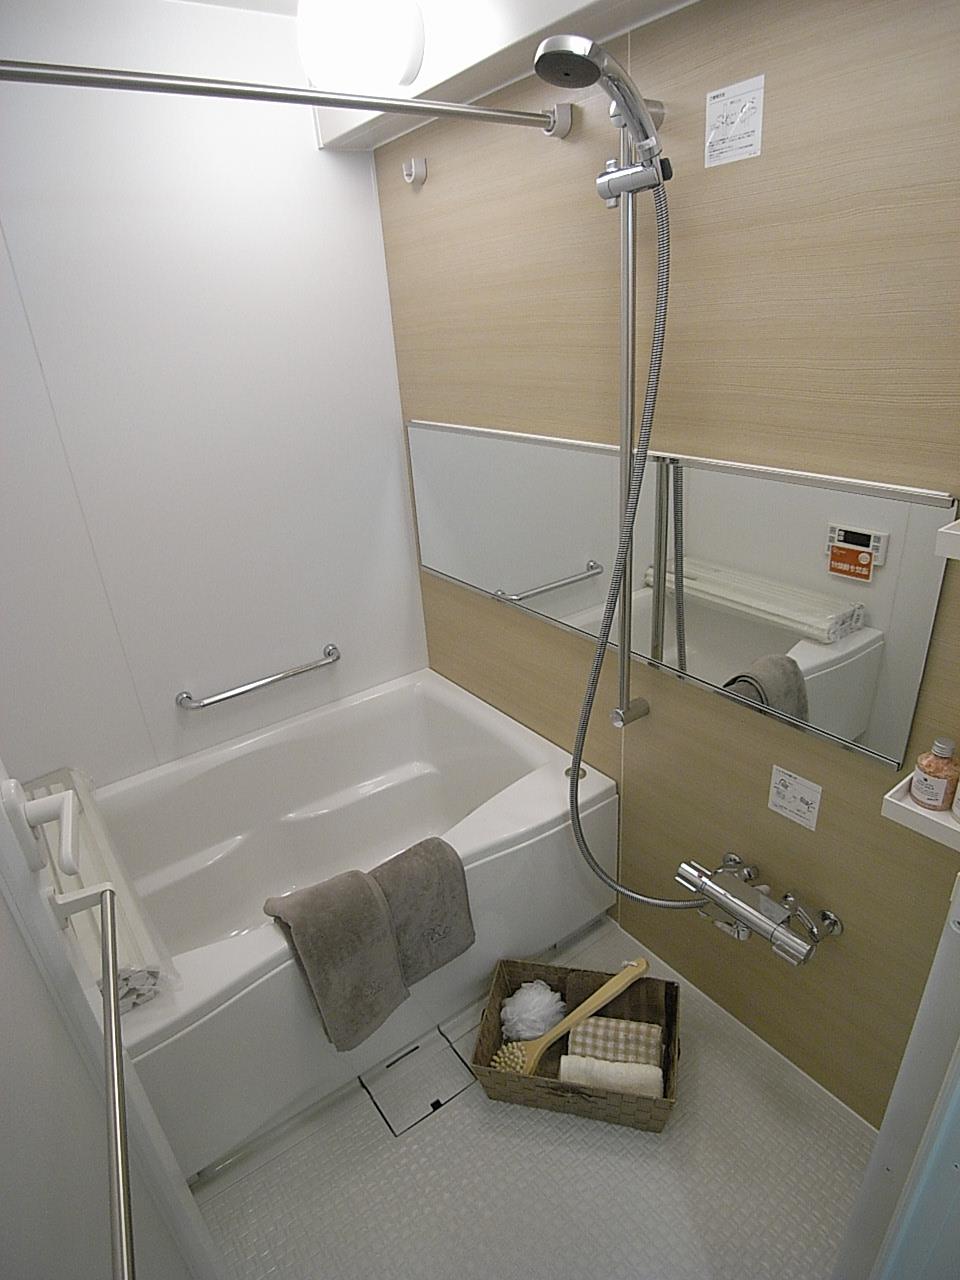 Bathroom. Indoor (June 2013) Shooting Bathroom dryer with